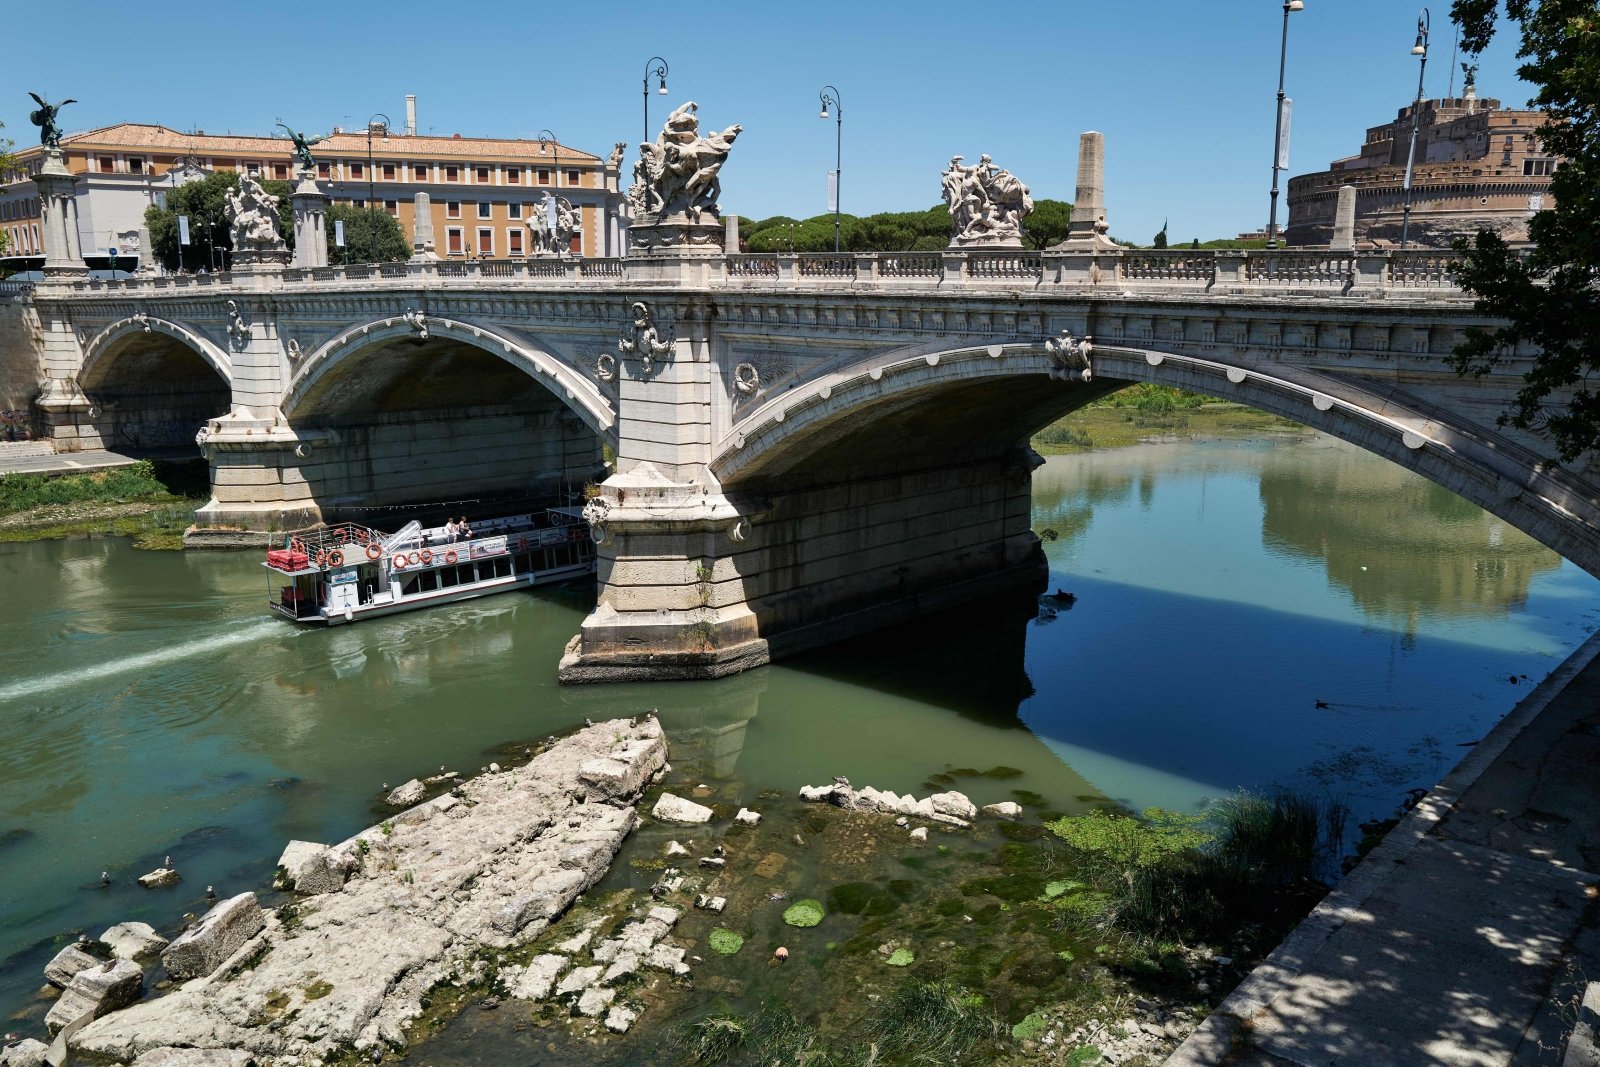 Il Tevere in Italia, colpito da una siccità record, ha rivelato un oggetto straordinario: un ponte sottomarino risalente all’imperatore romano Nerone